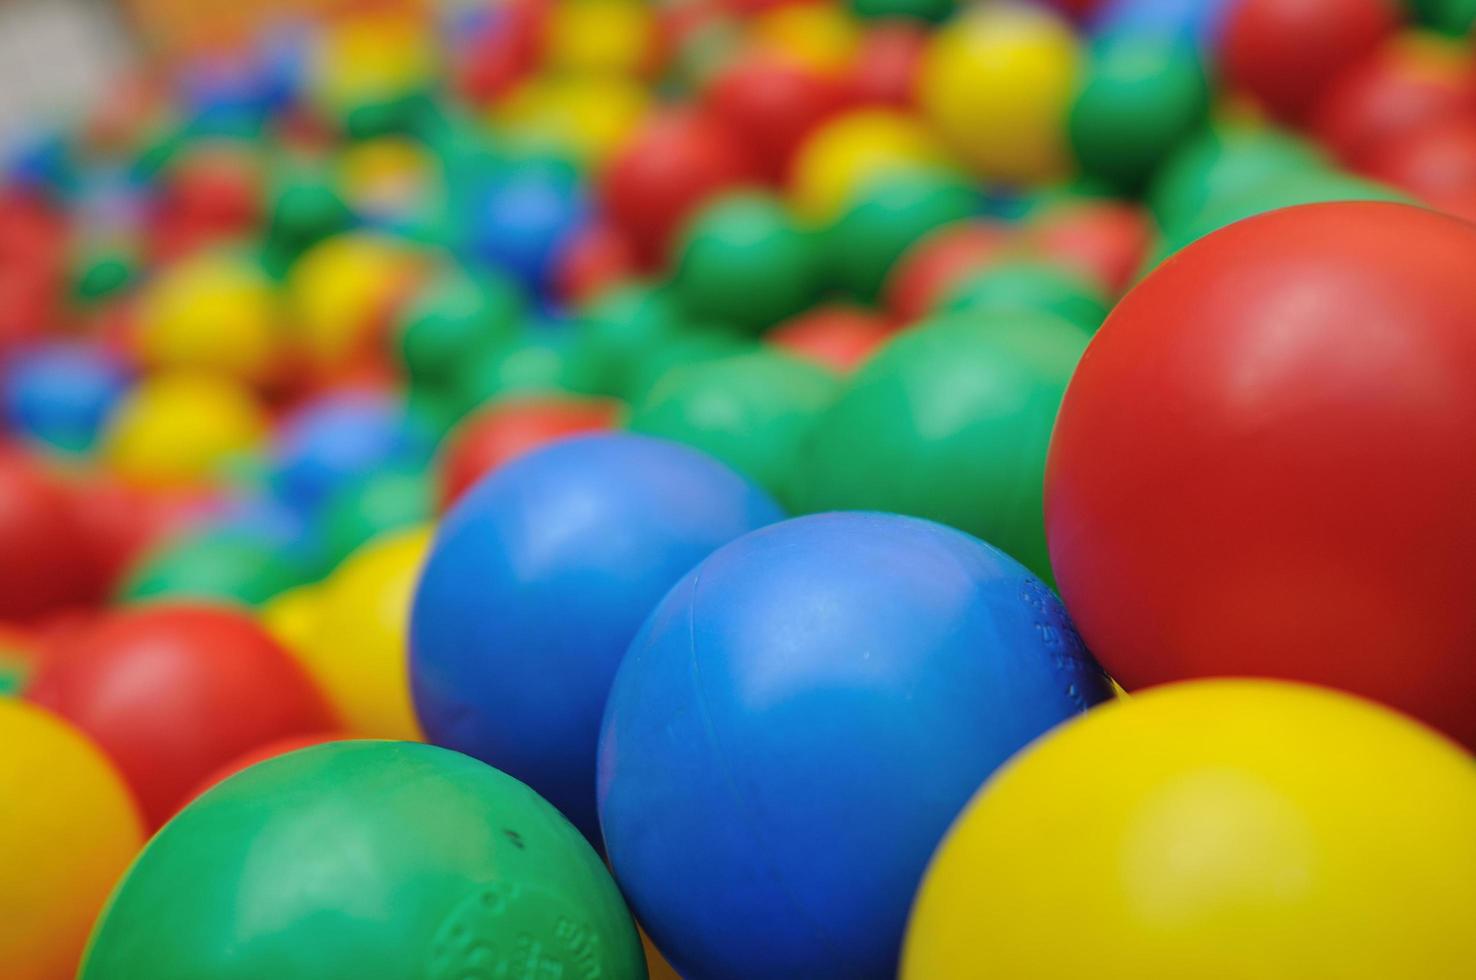 kleurrijke ballen achtergrond foto